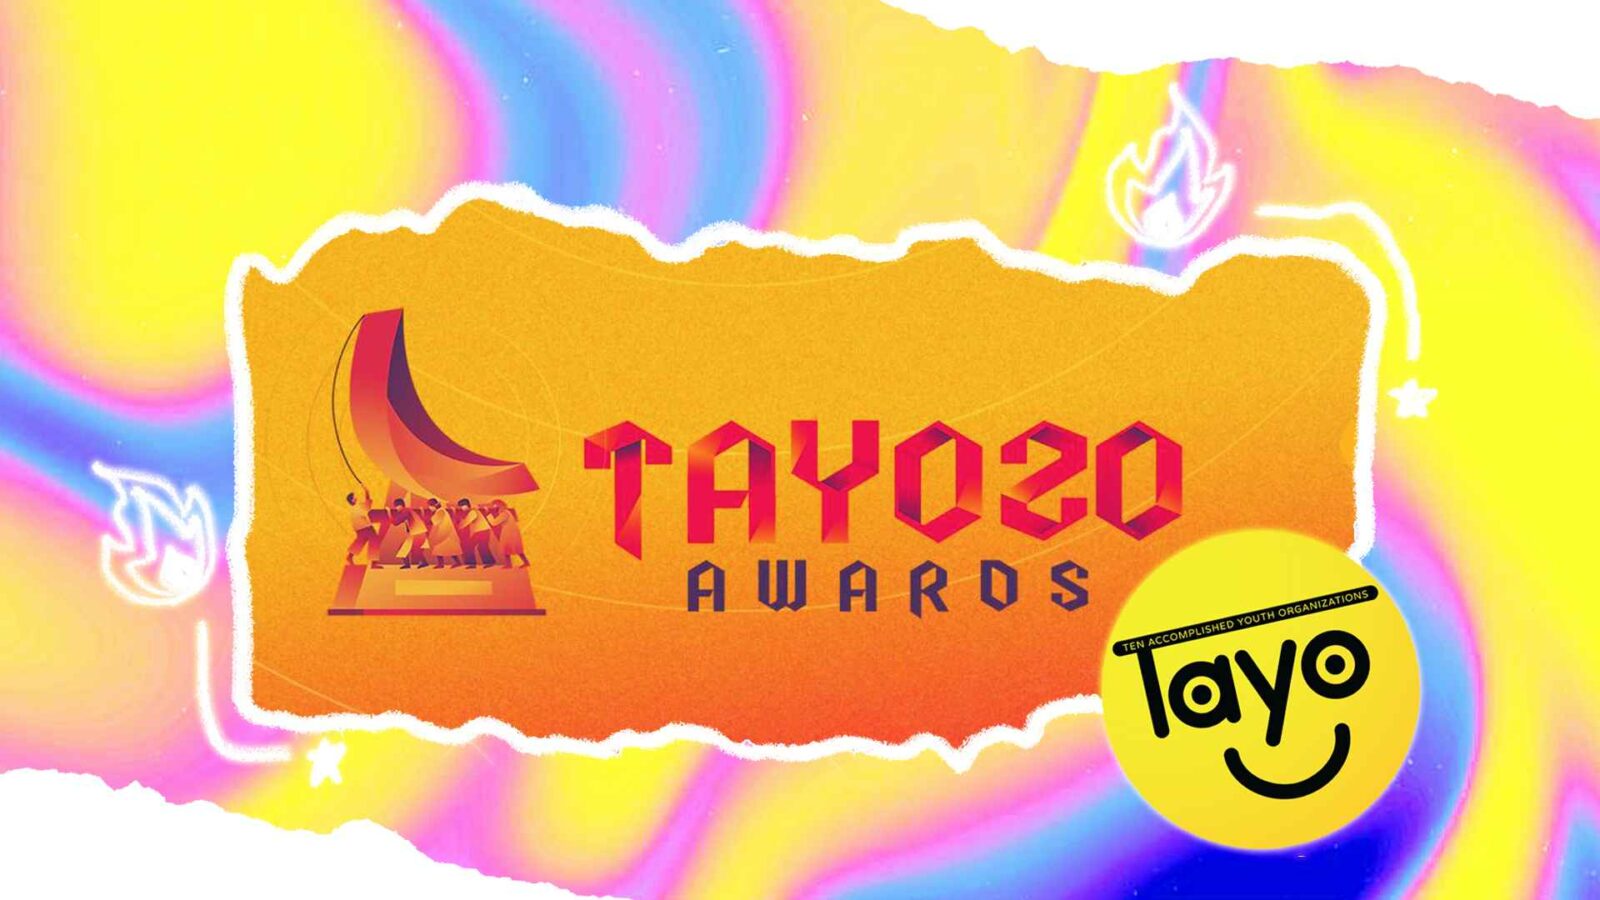 TAYO Awards